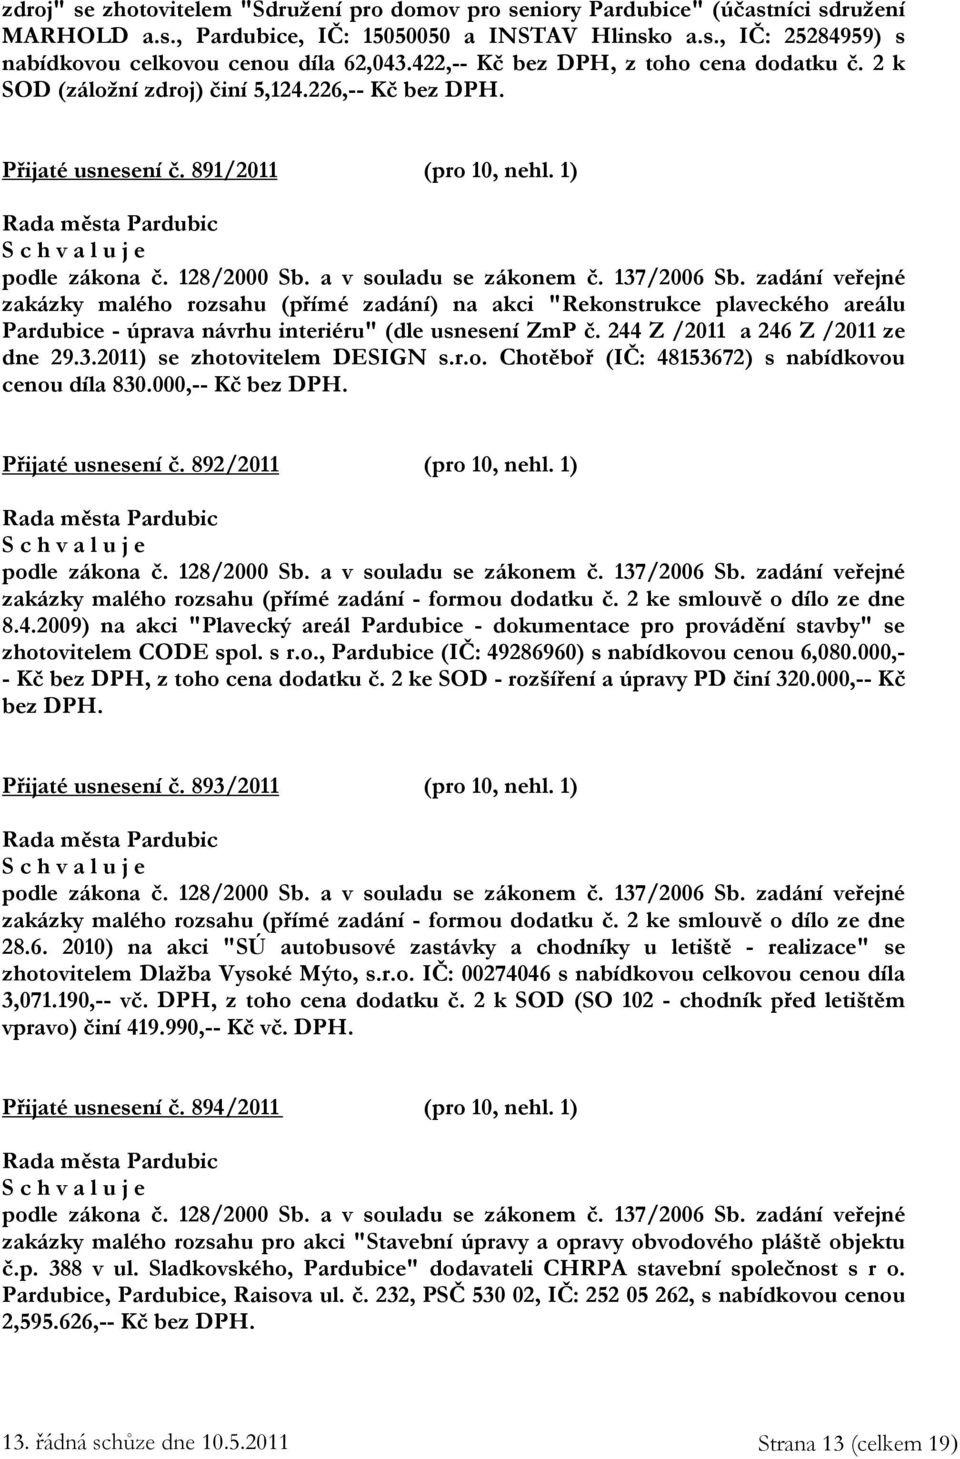 137/2006 Sb. zadání veřejné zakázky malého rozsahu (přímé zadání) na akci "Rekonstrukce plaveckého areálu Pardubice - úprava návrhu interiéru" (dle usnesení ZmP č. 244 Z /2011 a 246 Z /2011 ze dne 29.